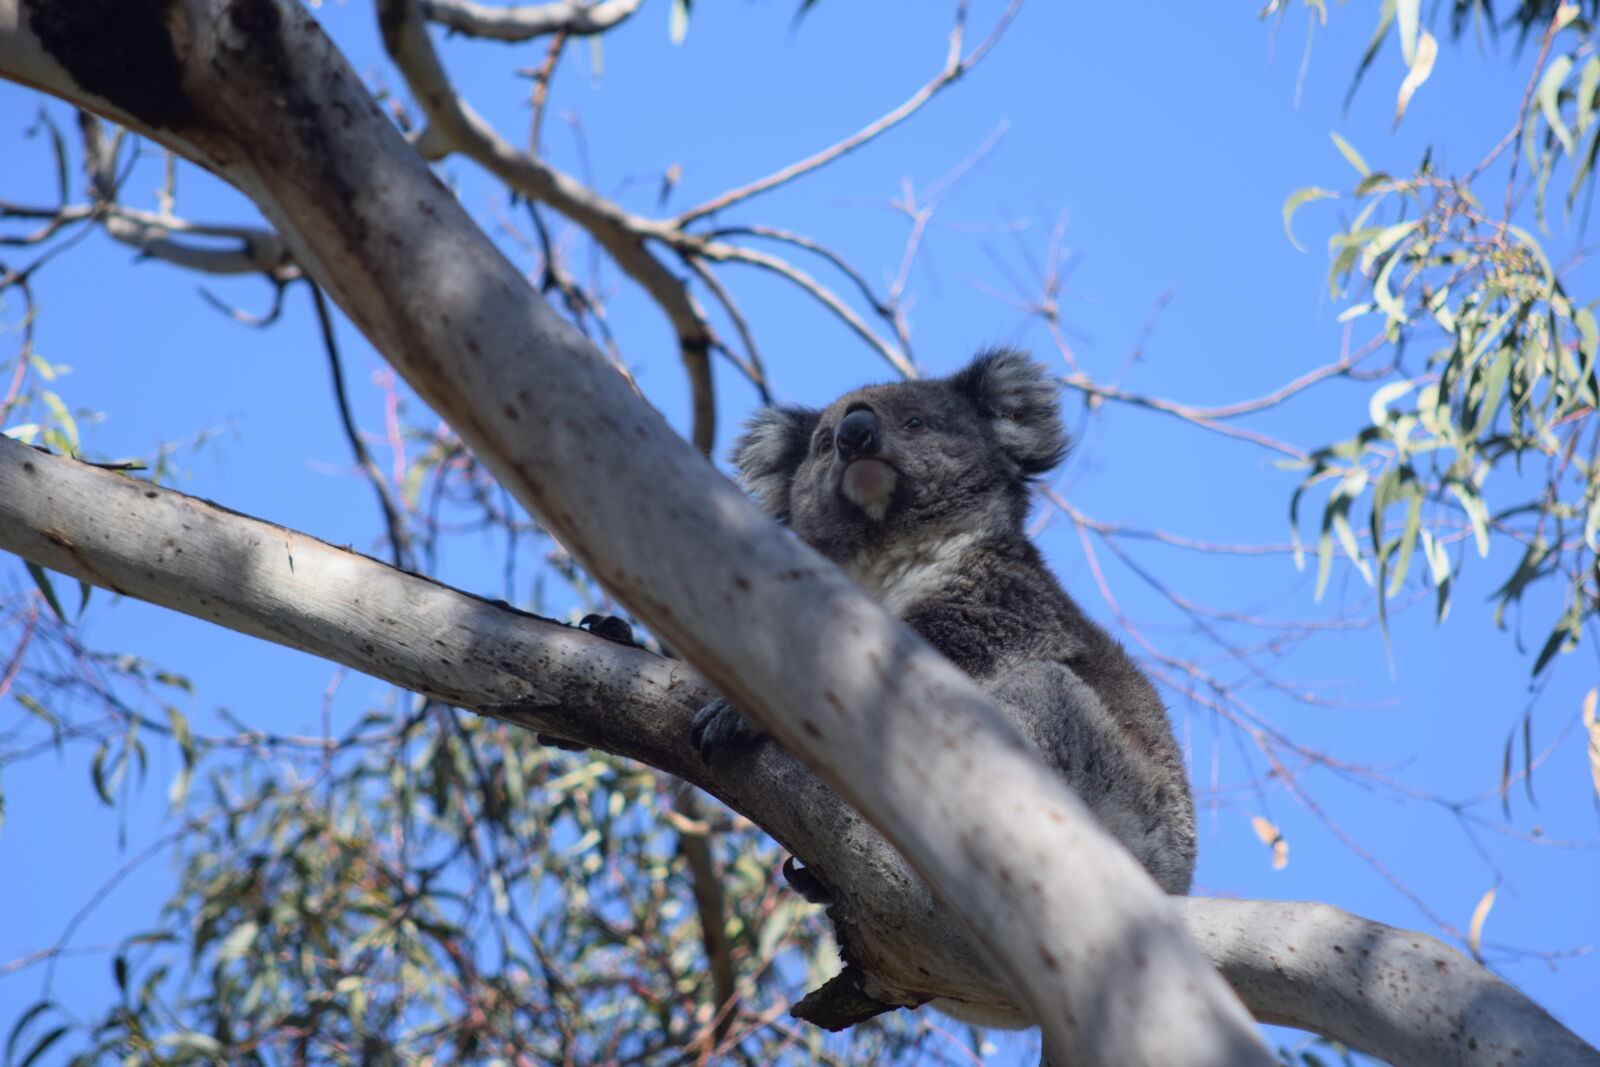 AF Nikkor 70-210mm f/4-5.6 sample photo. Koala photography